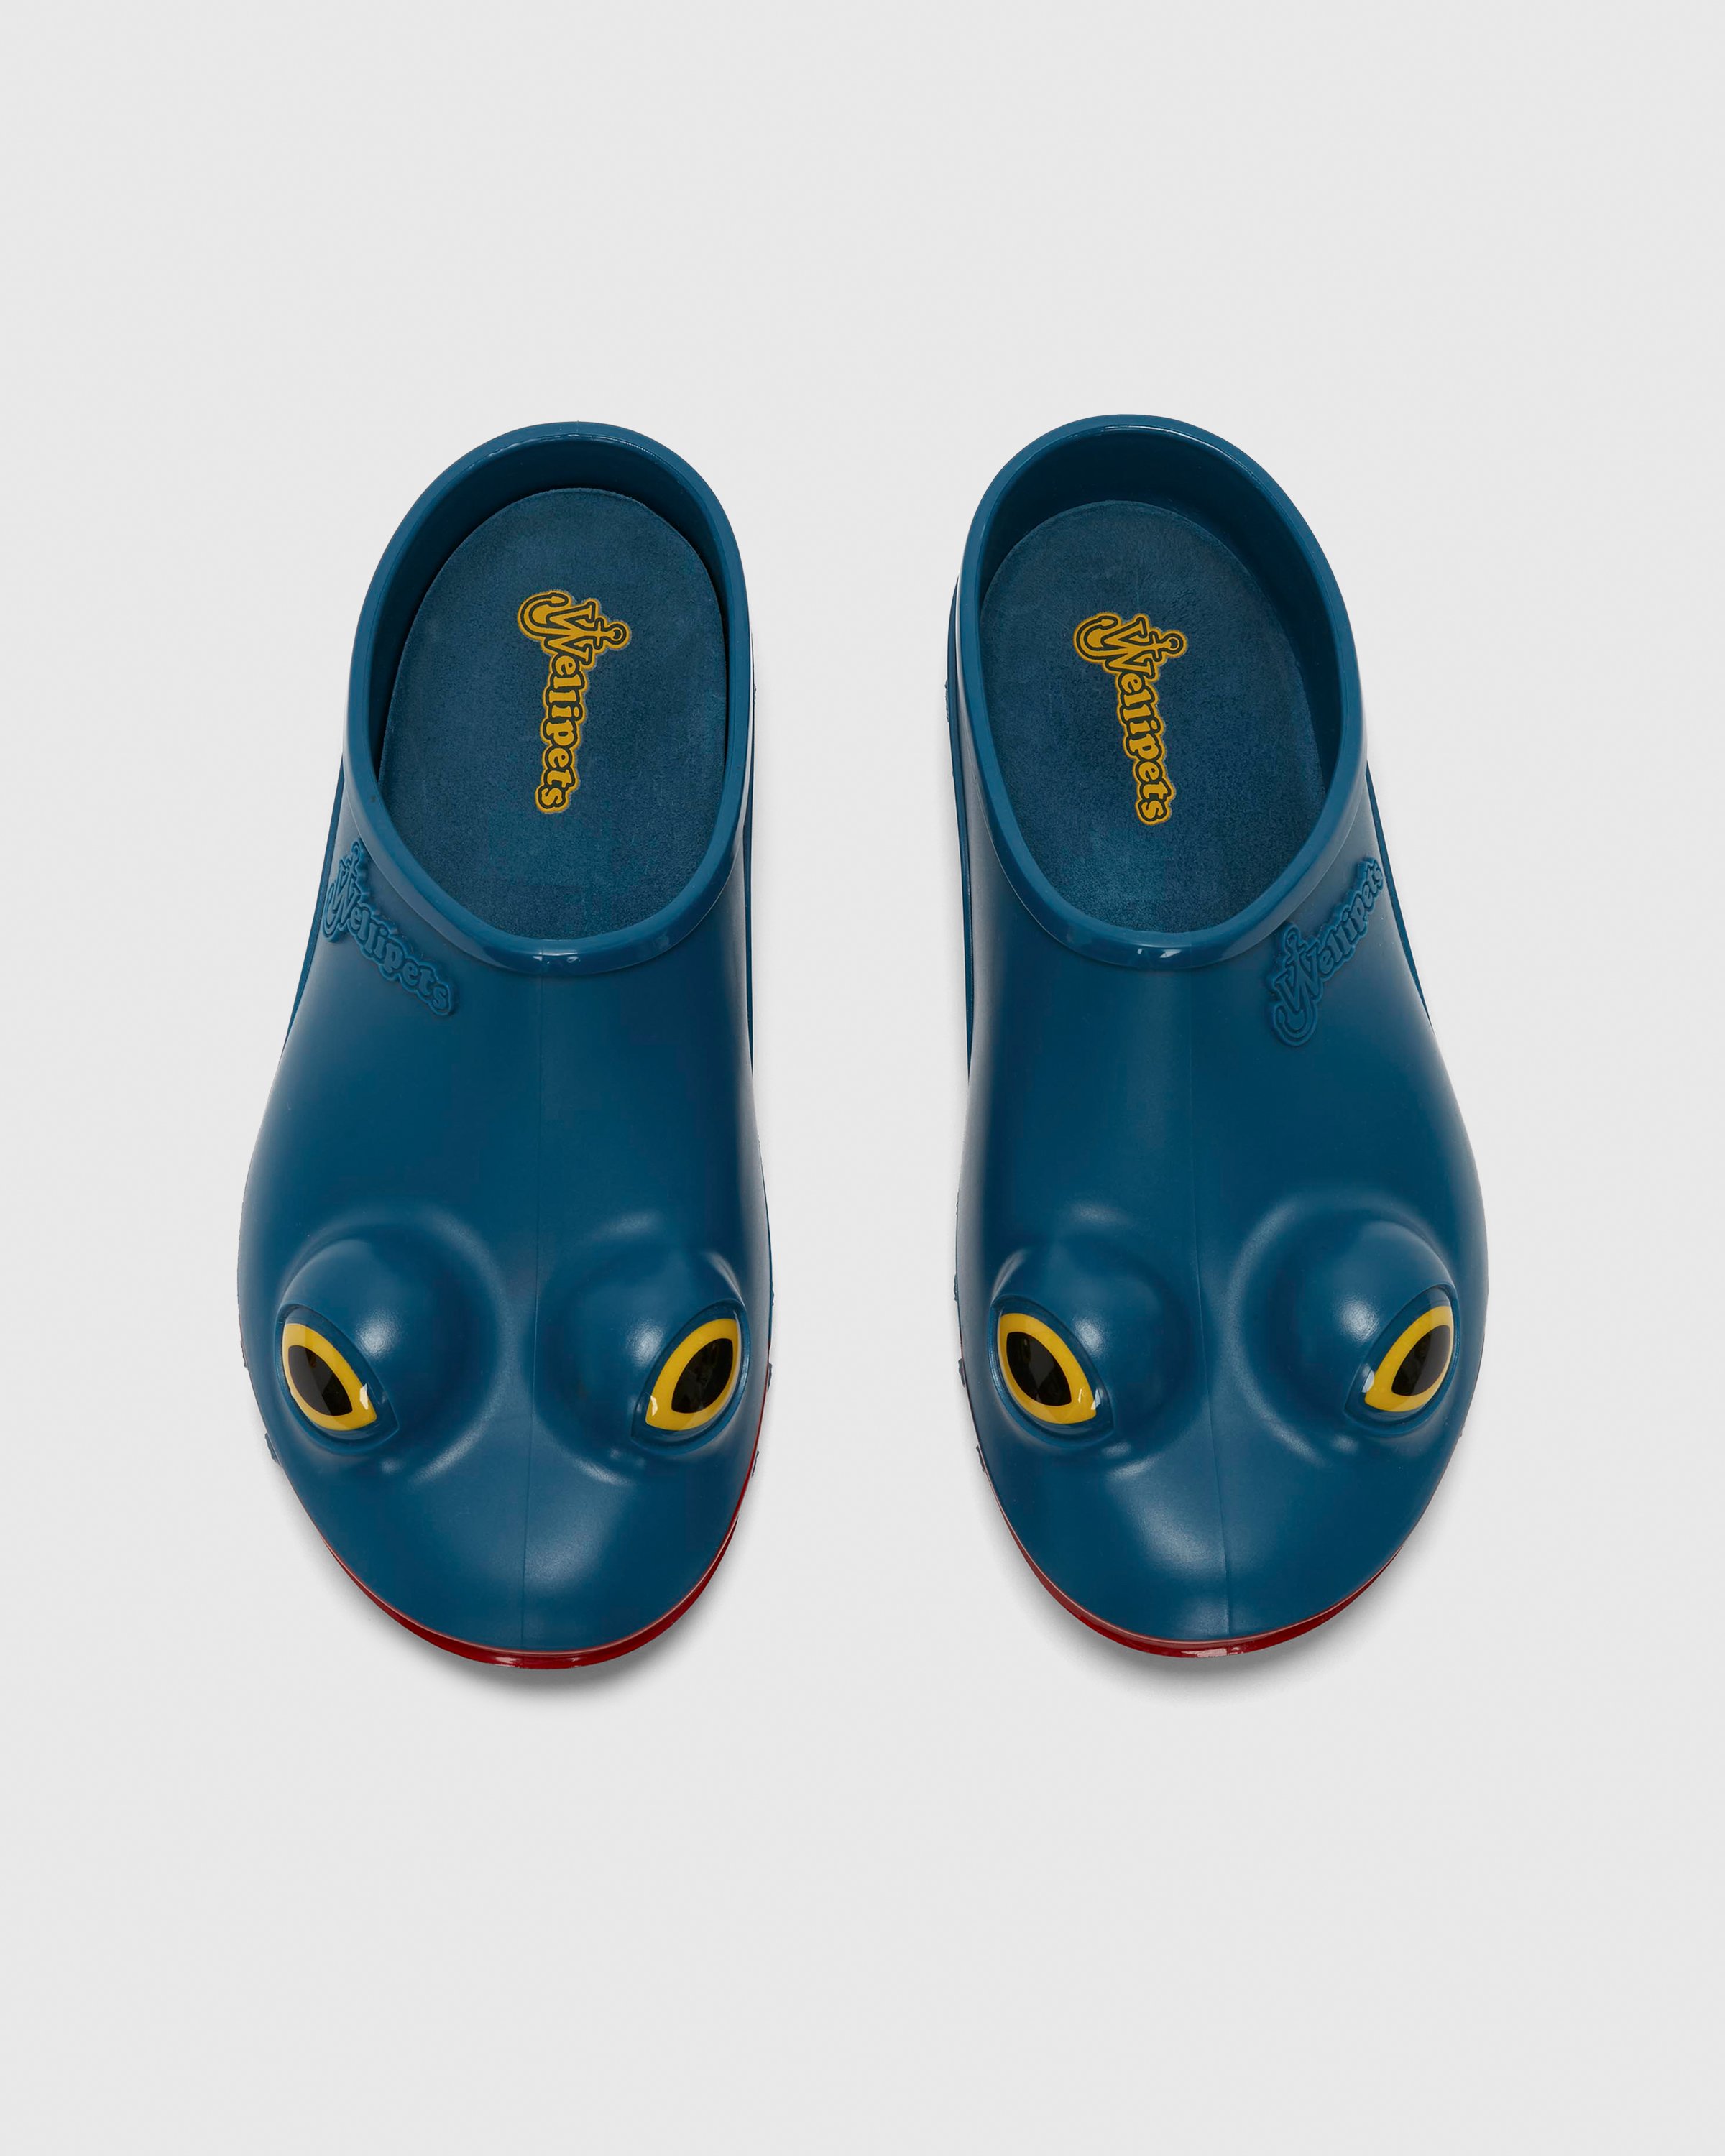 J.W. Anderson x Wellipets - Frog Loafer Blue - Footwear - Blue - Image 4